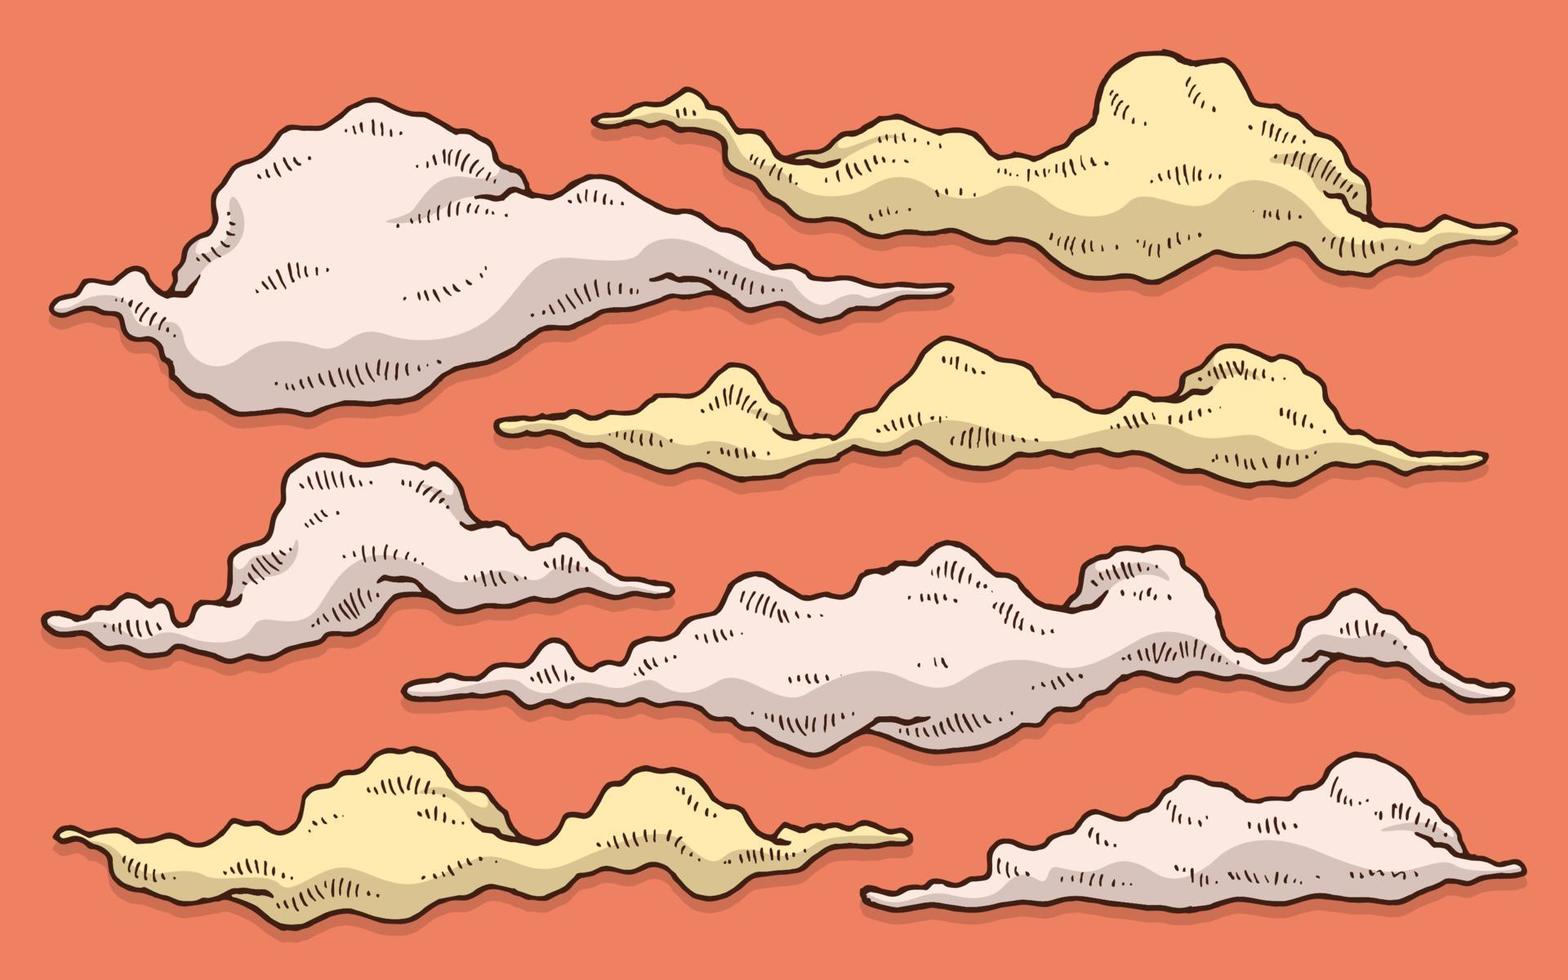 colección de juegos de dibujo a mano de humo y nubes con fondo naranja vector